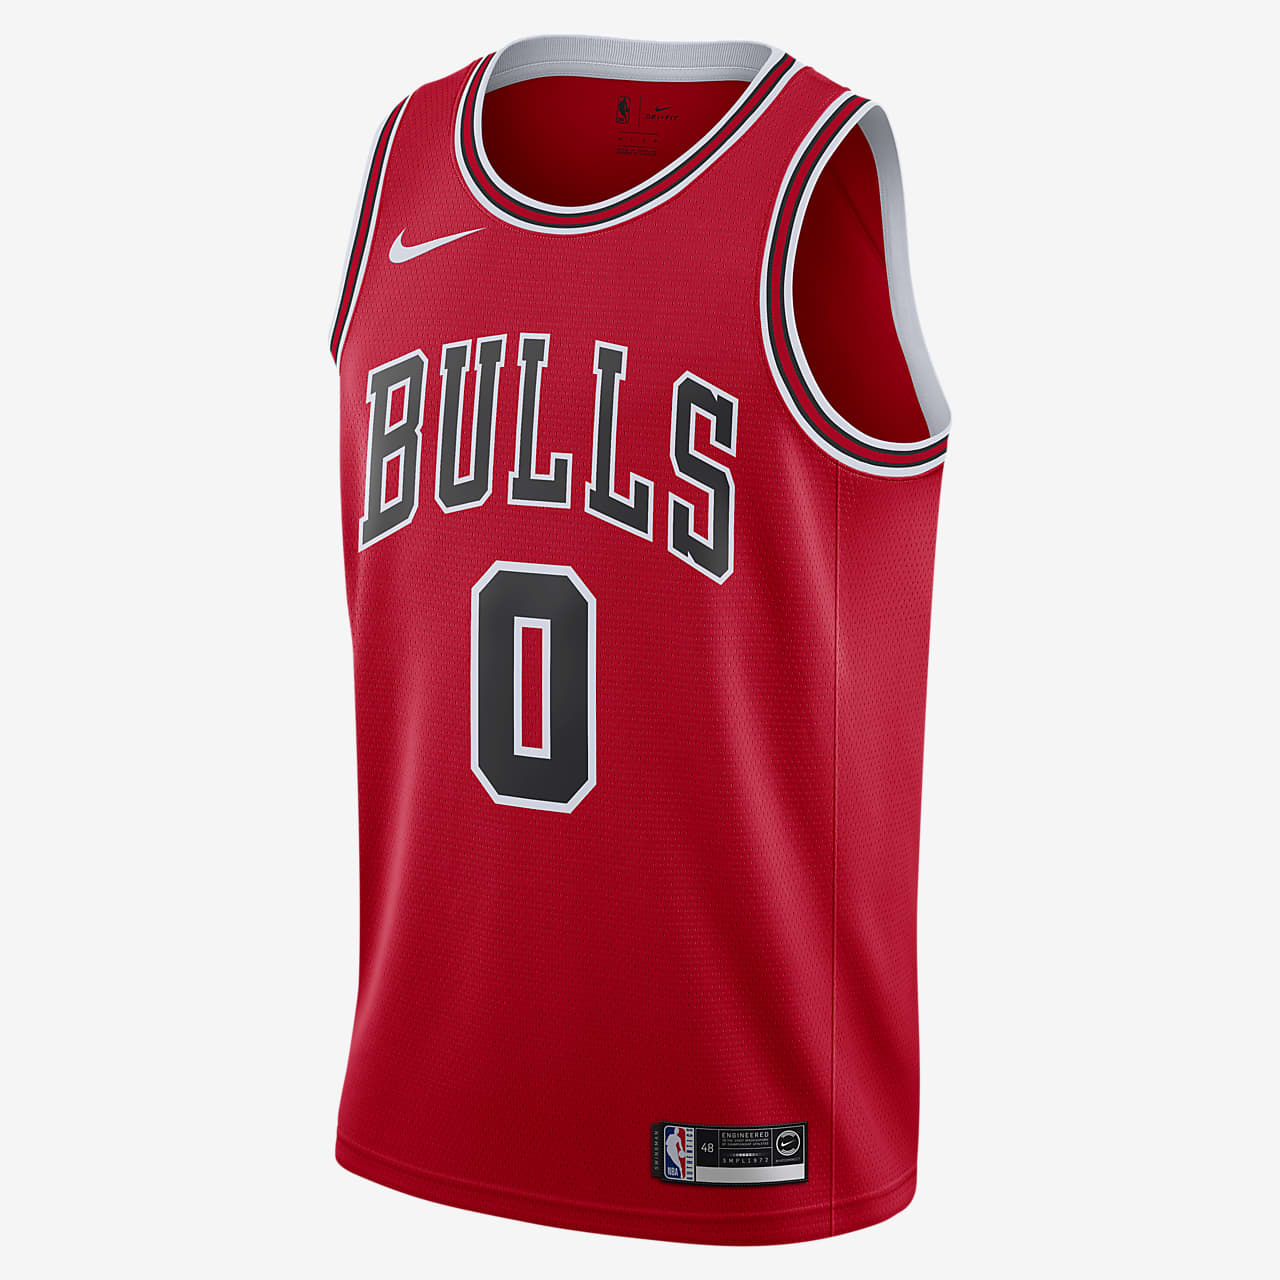 Camiseta conectada Nike NBA para hombre Icon Edition Swingman (Chicago Bulls).  Nike.com